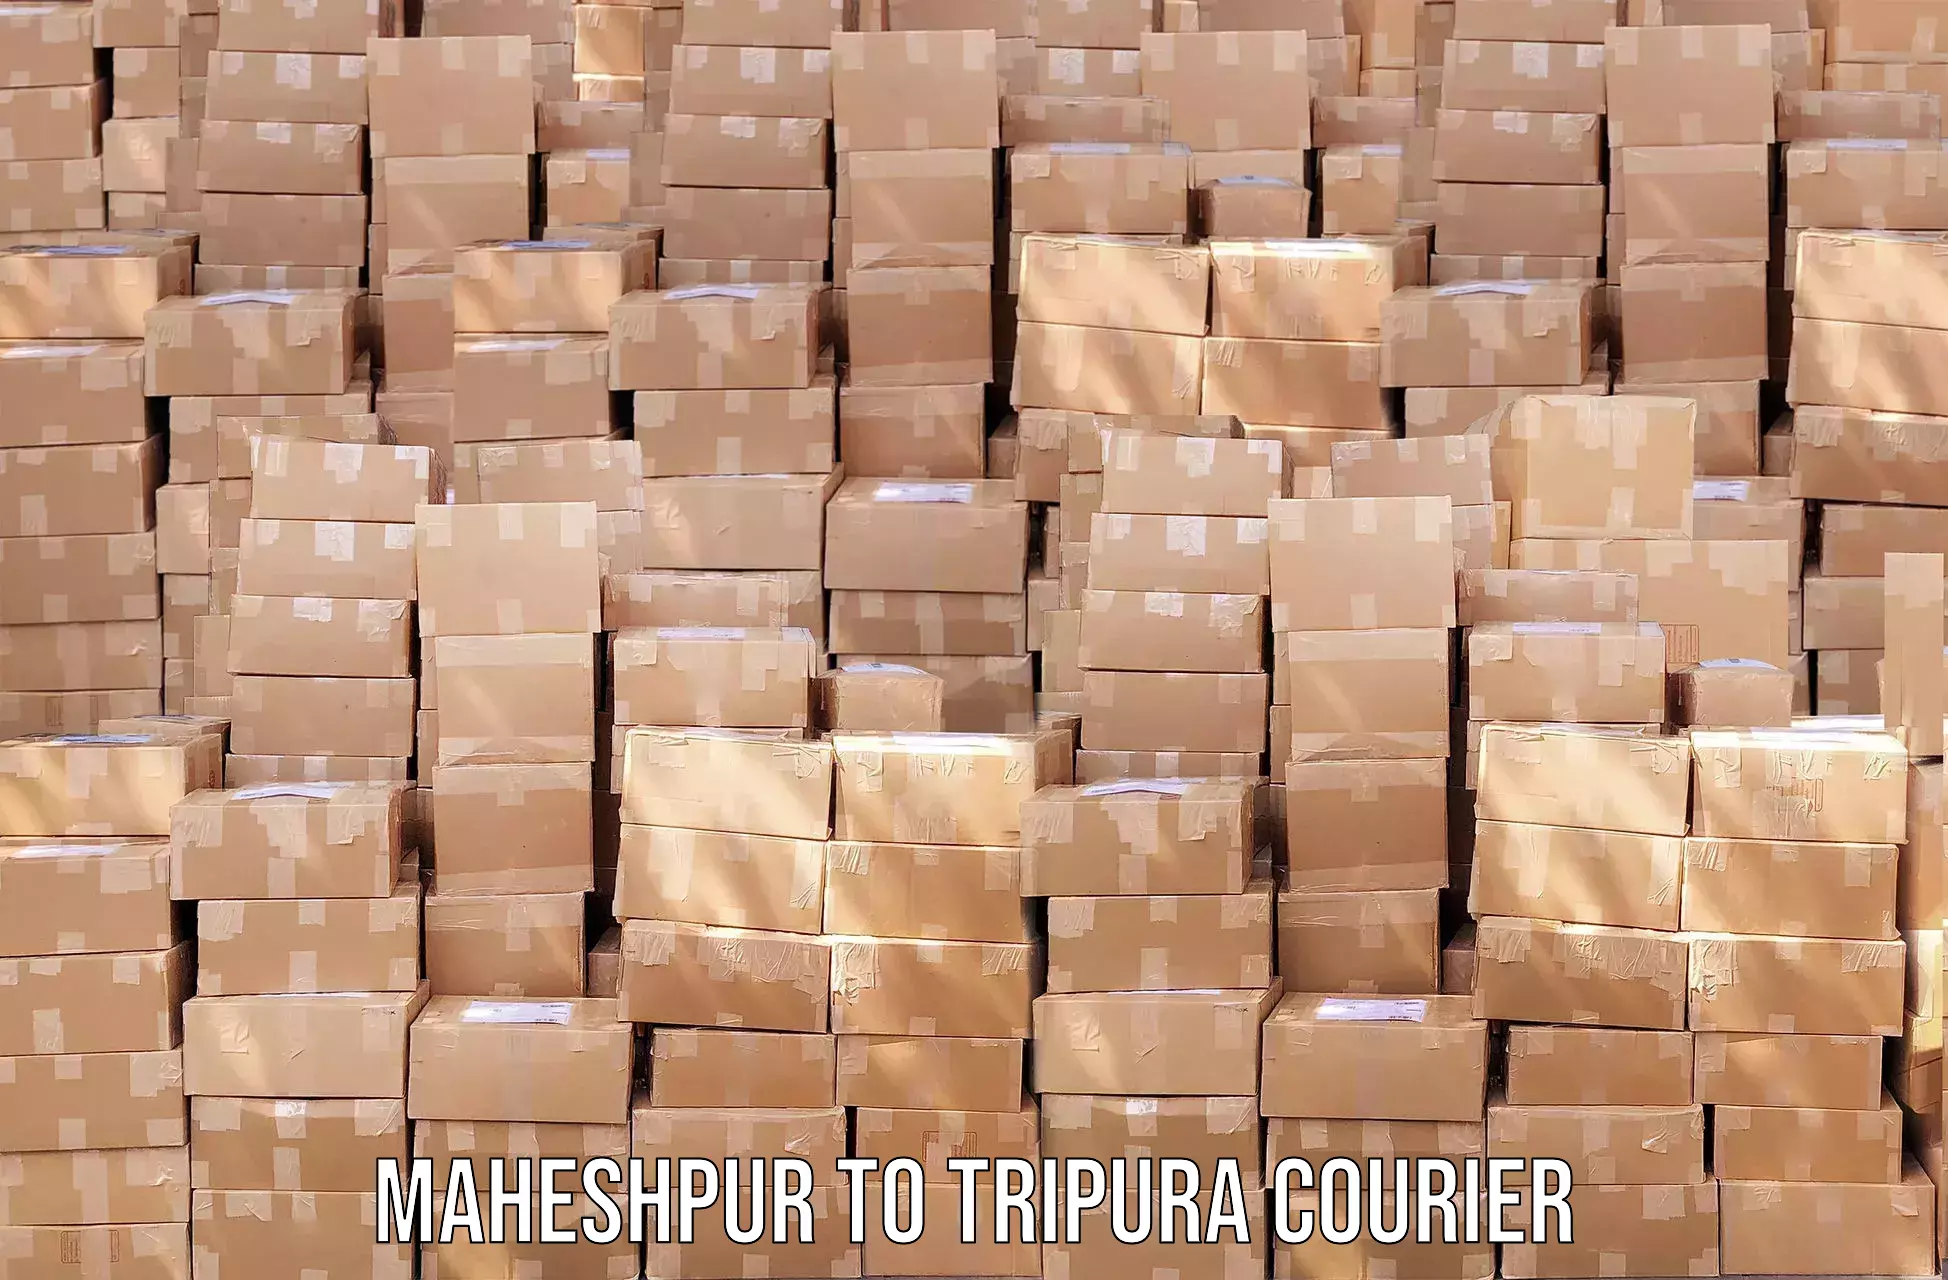 Courier service comparison Maheshpur to Manughat